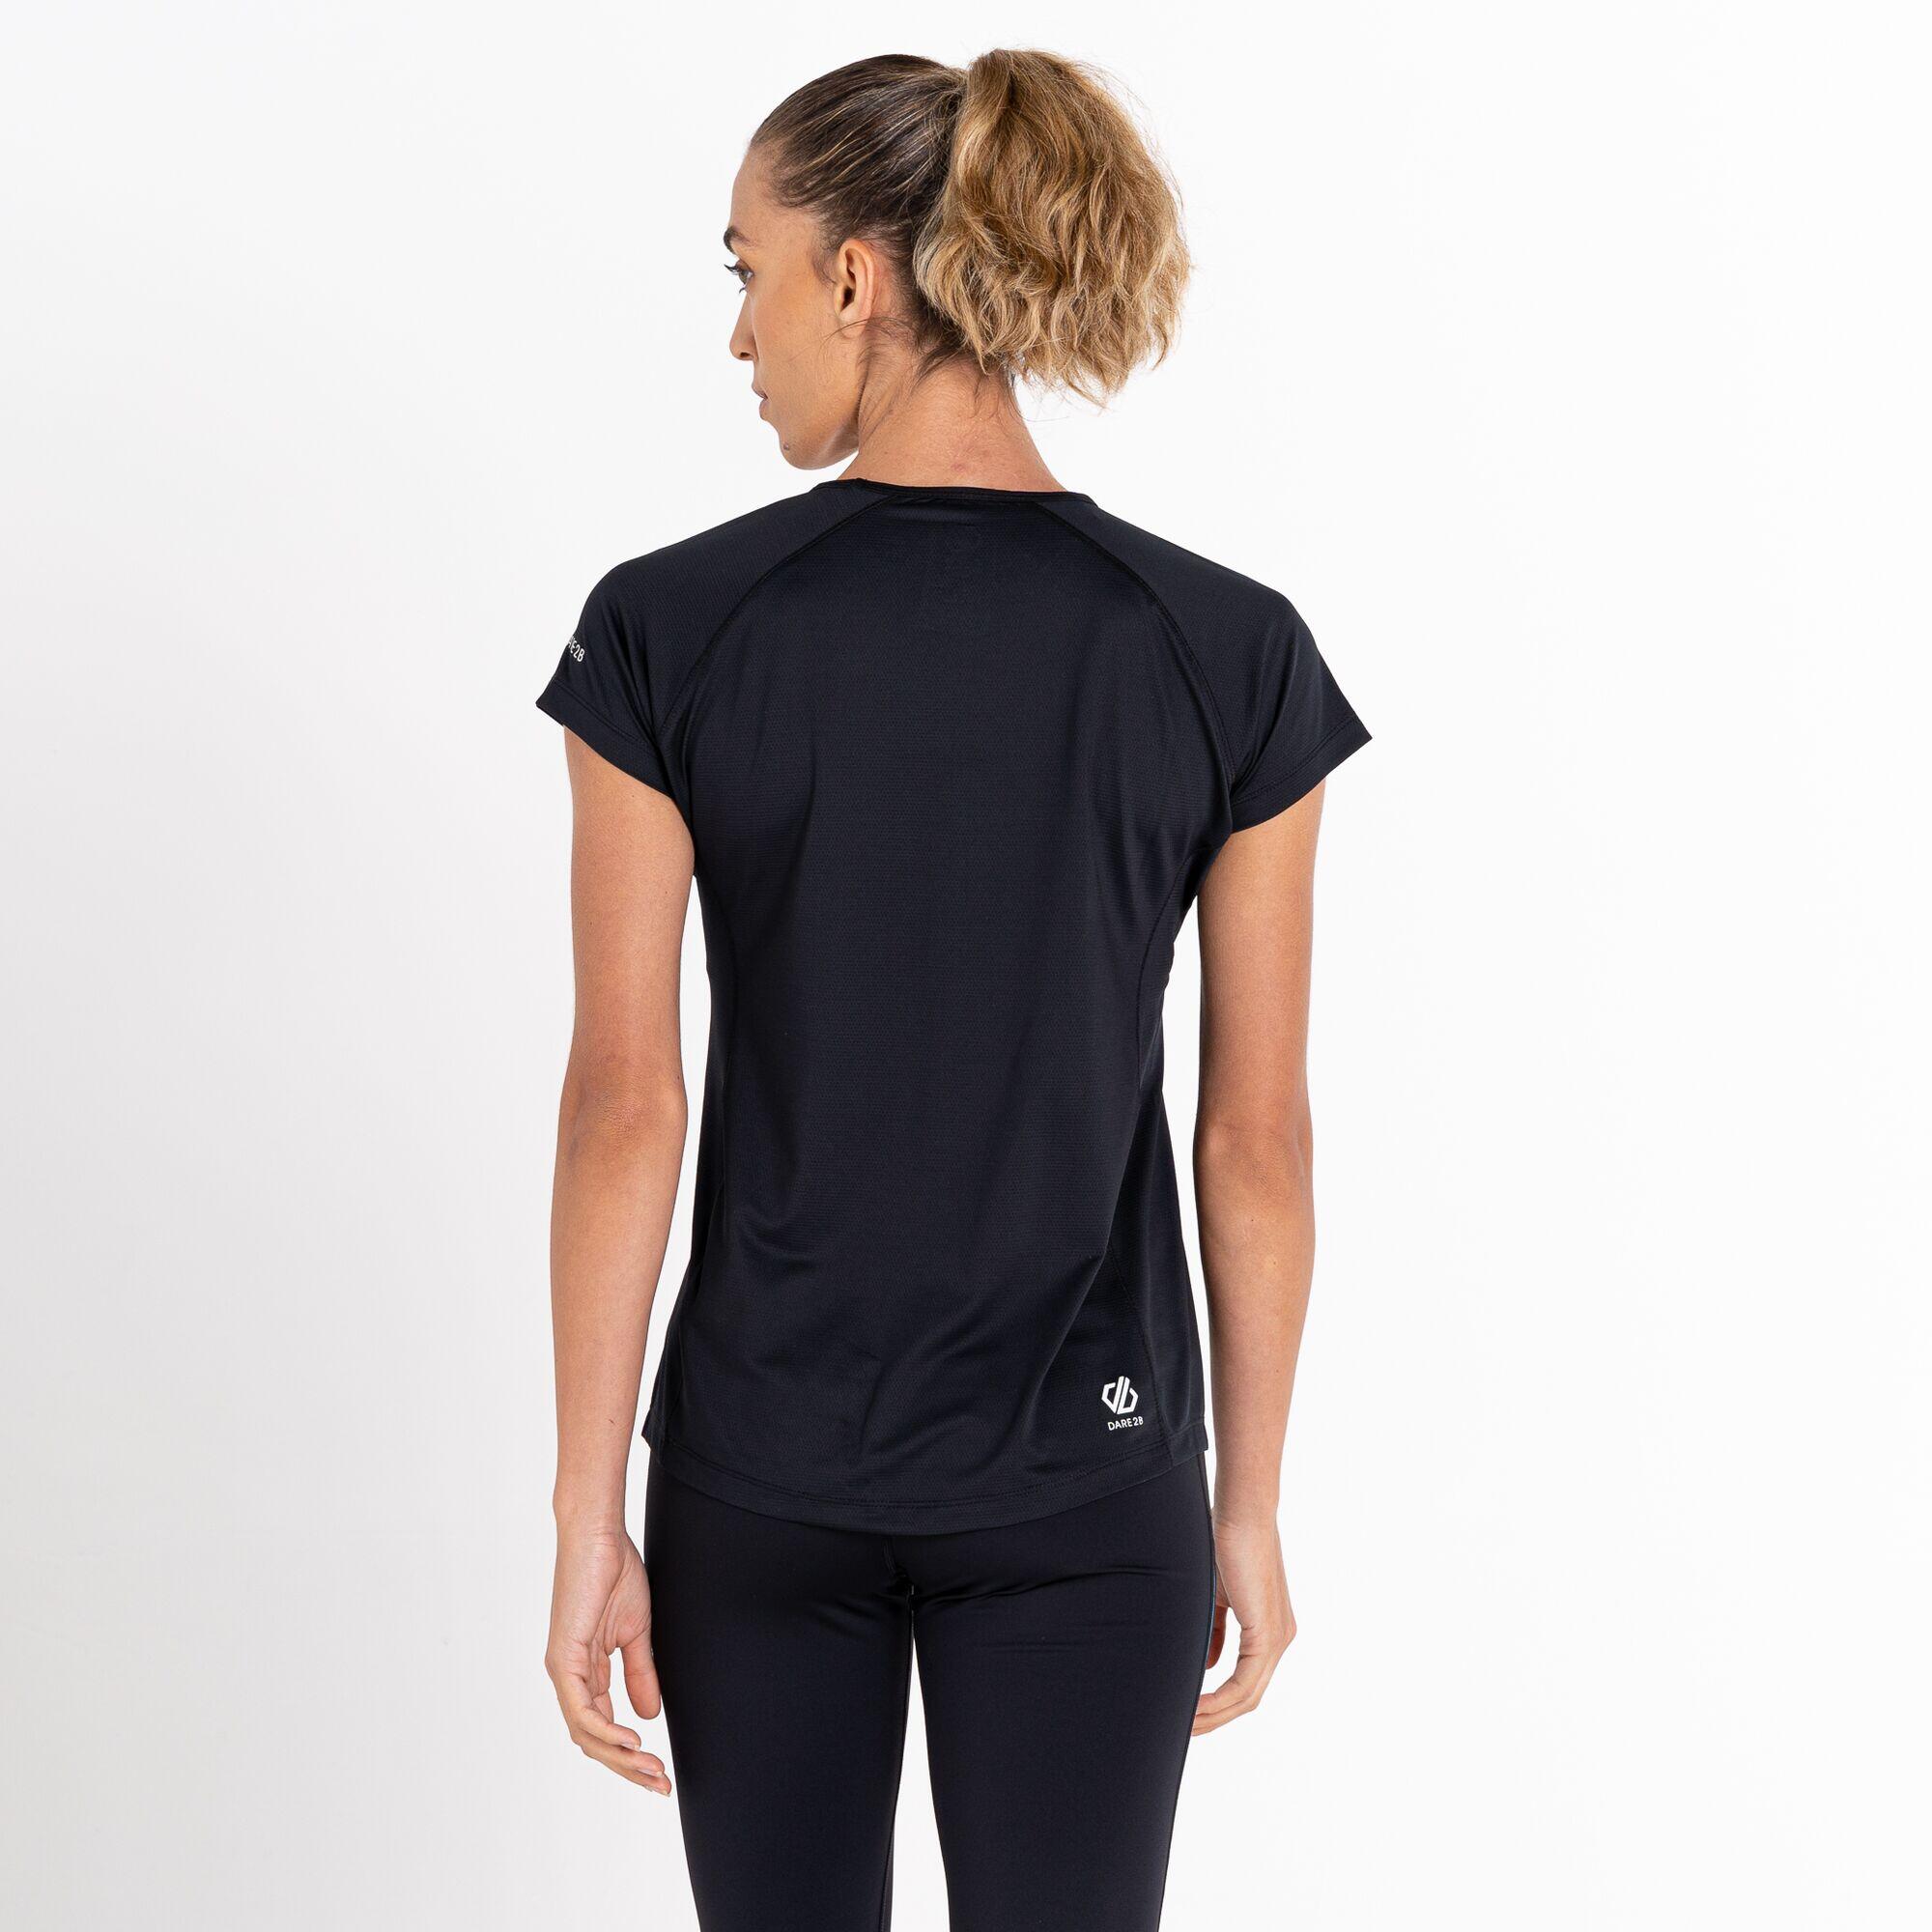 Corral Women's Fitness Short Sleeve T-Shirt - Black 3/7